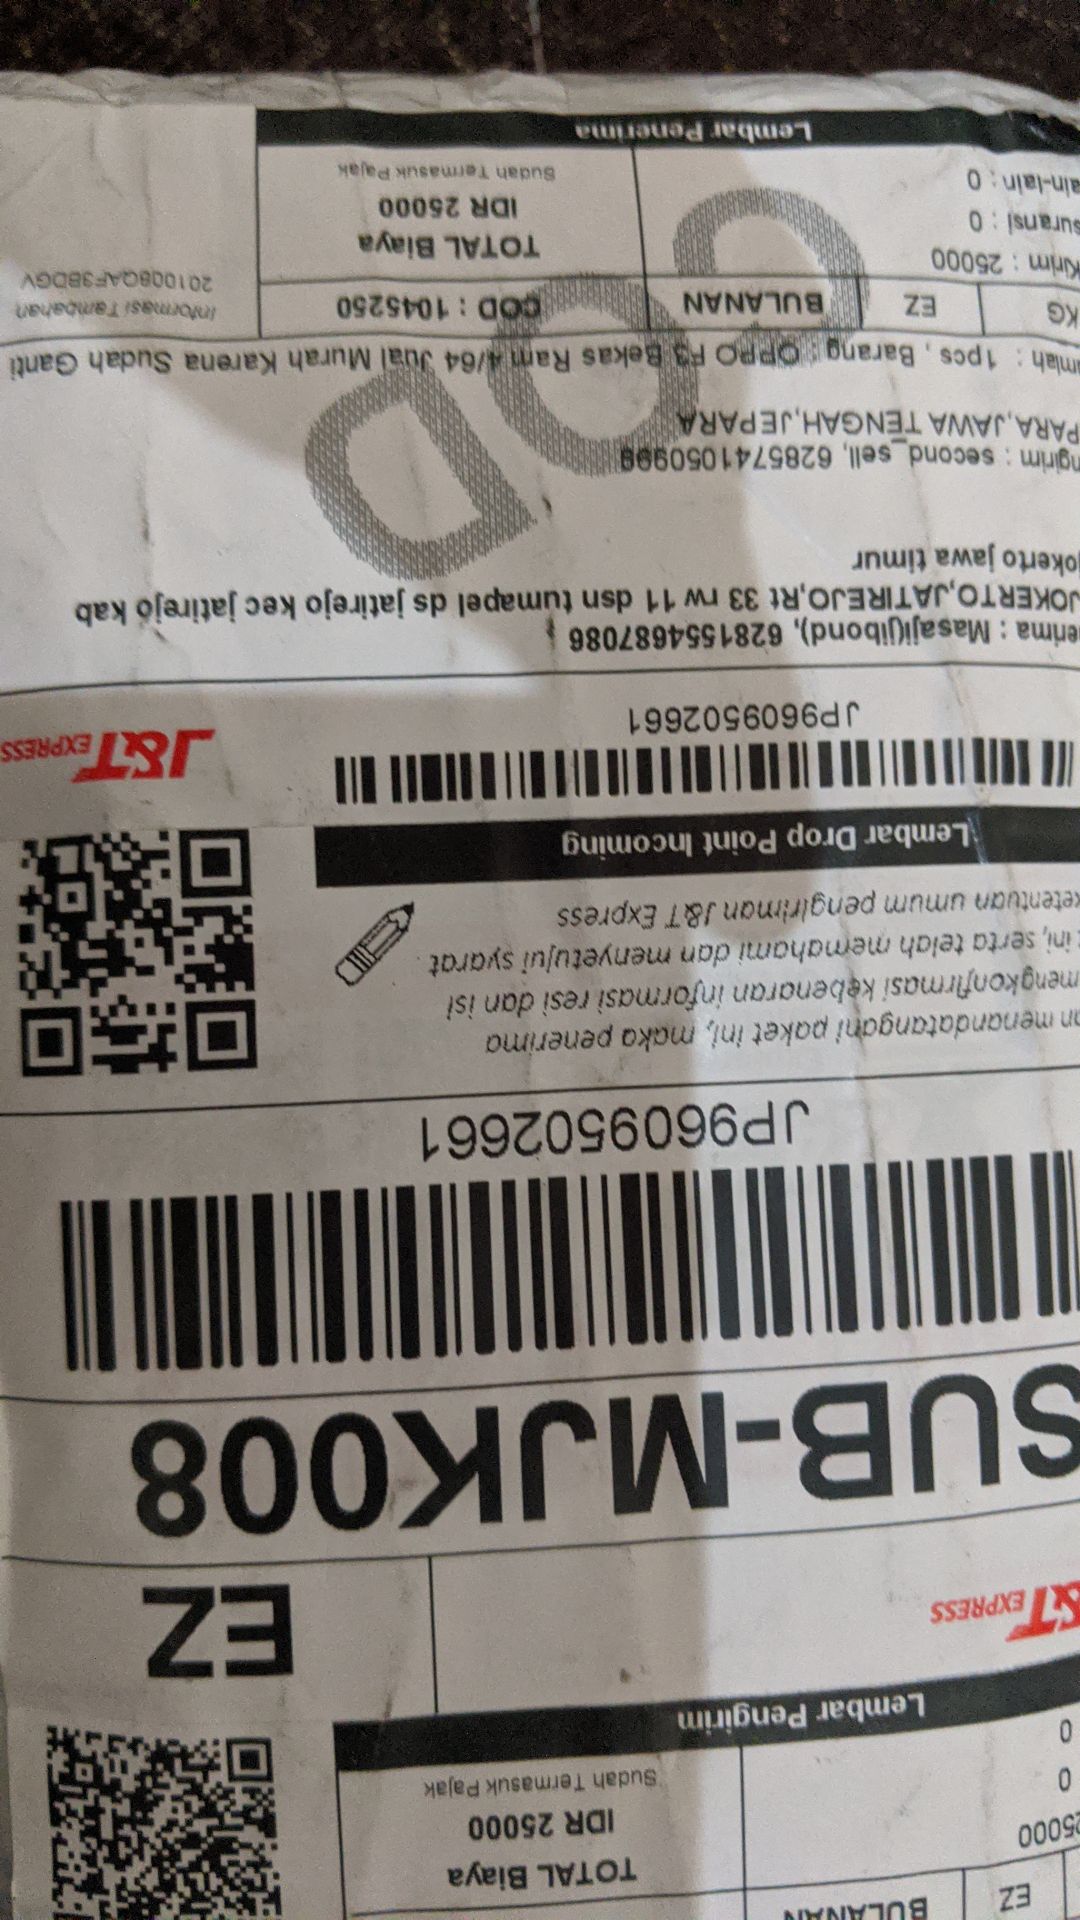 OPPO F3 Bekas Ram 4/64 Jual Murah Karena Sudah Ganti LCD